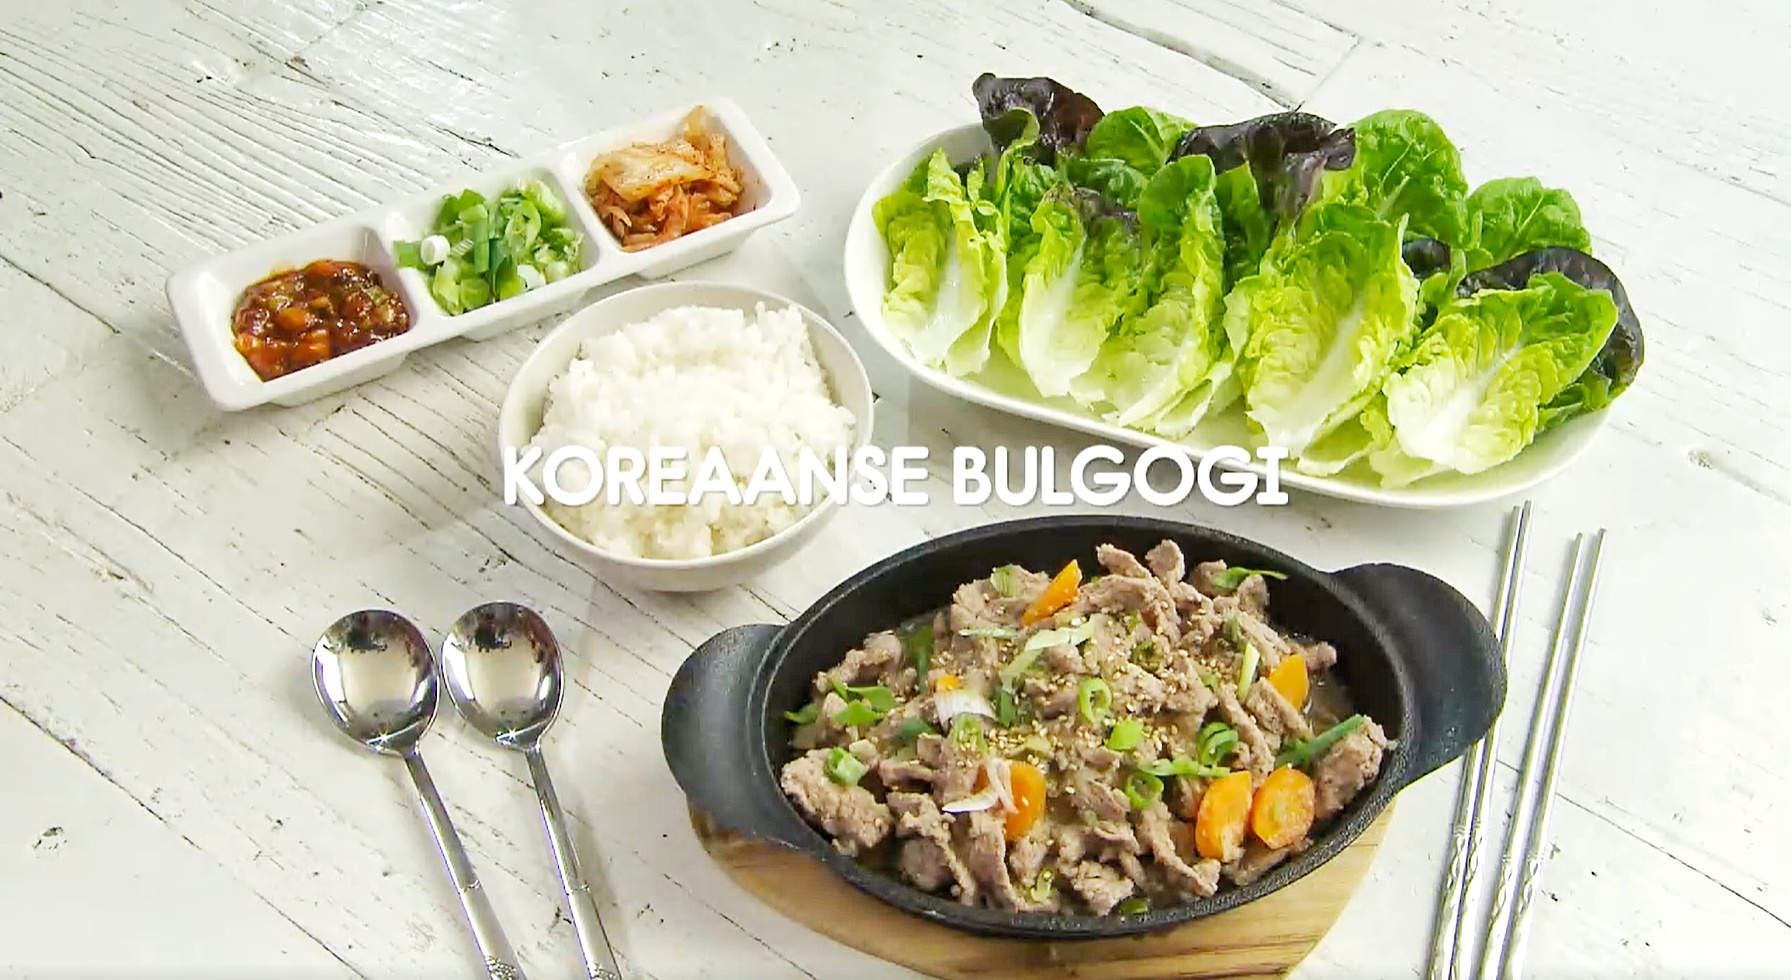 Koreaanse bulgogi op authentieke wijze